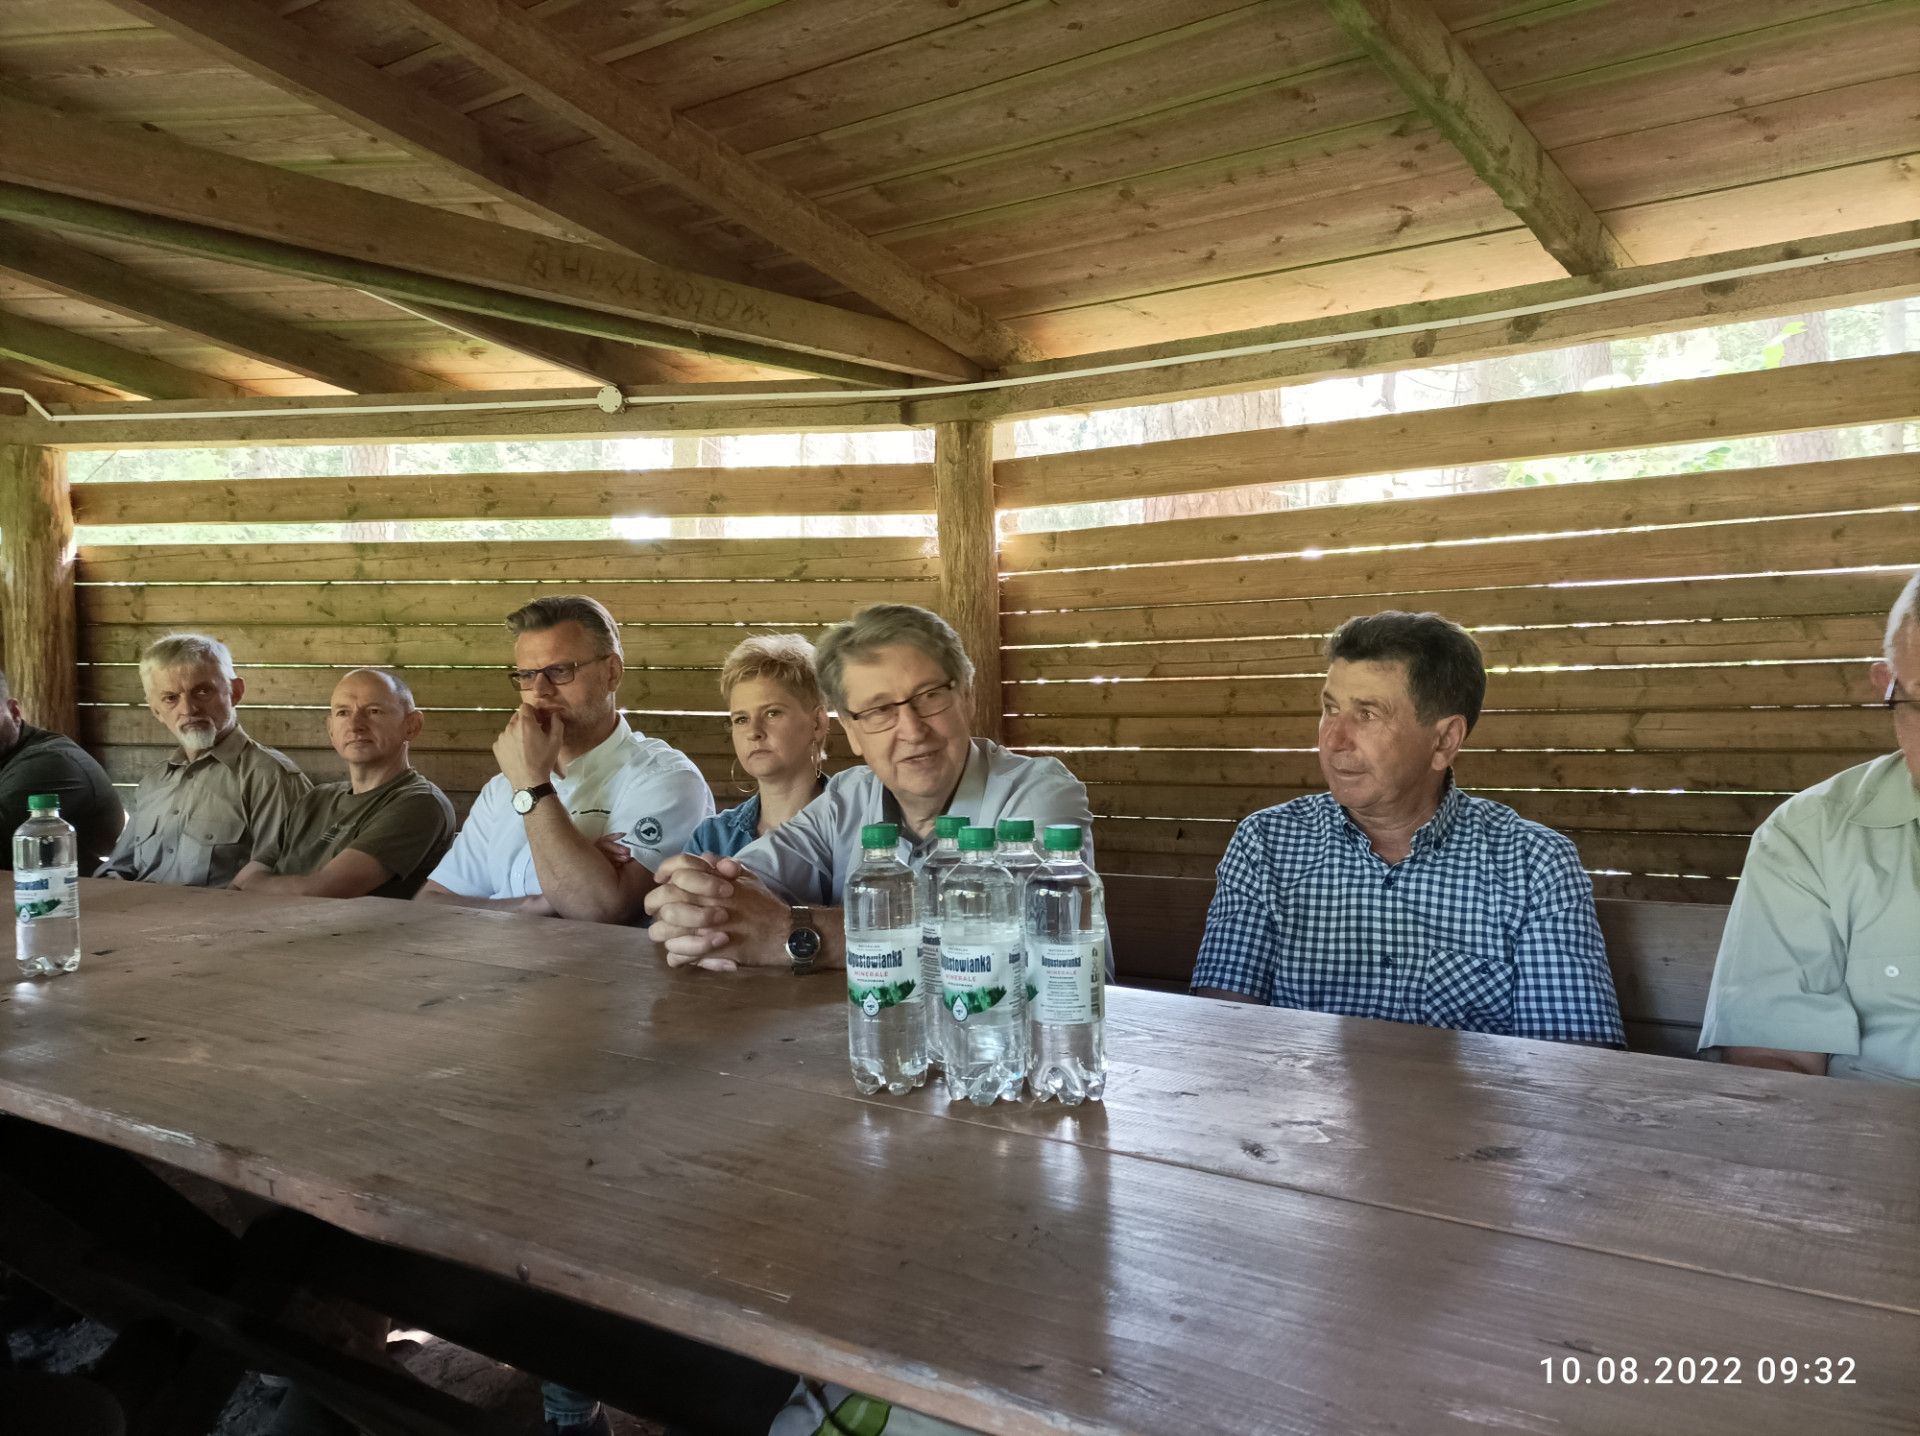 Spotkanie warsztatowe odbyło sie pod wiatą przy szkółce lesnej Nadleśnictwa Szczebra- fot. Joanna Jadeszko